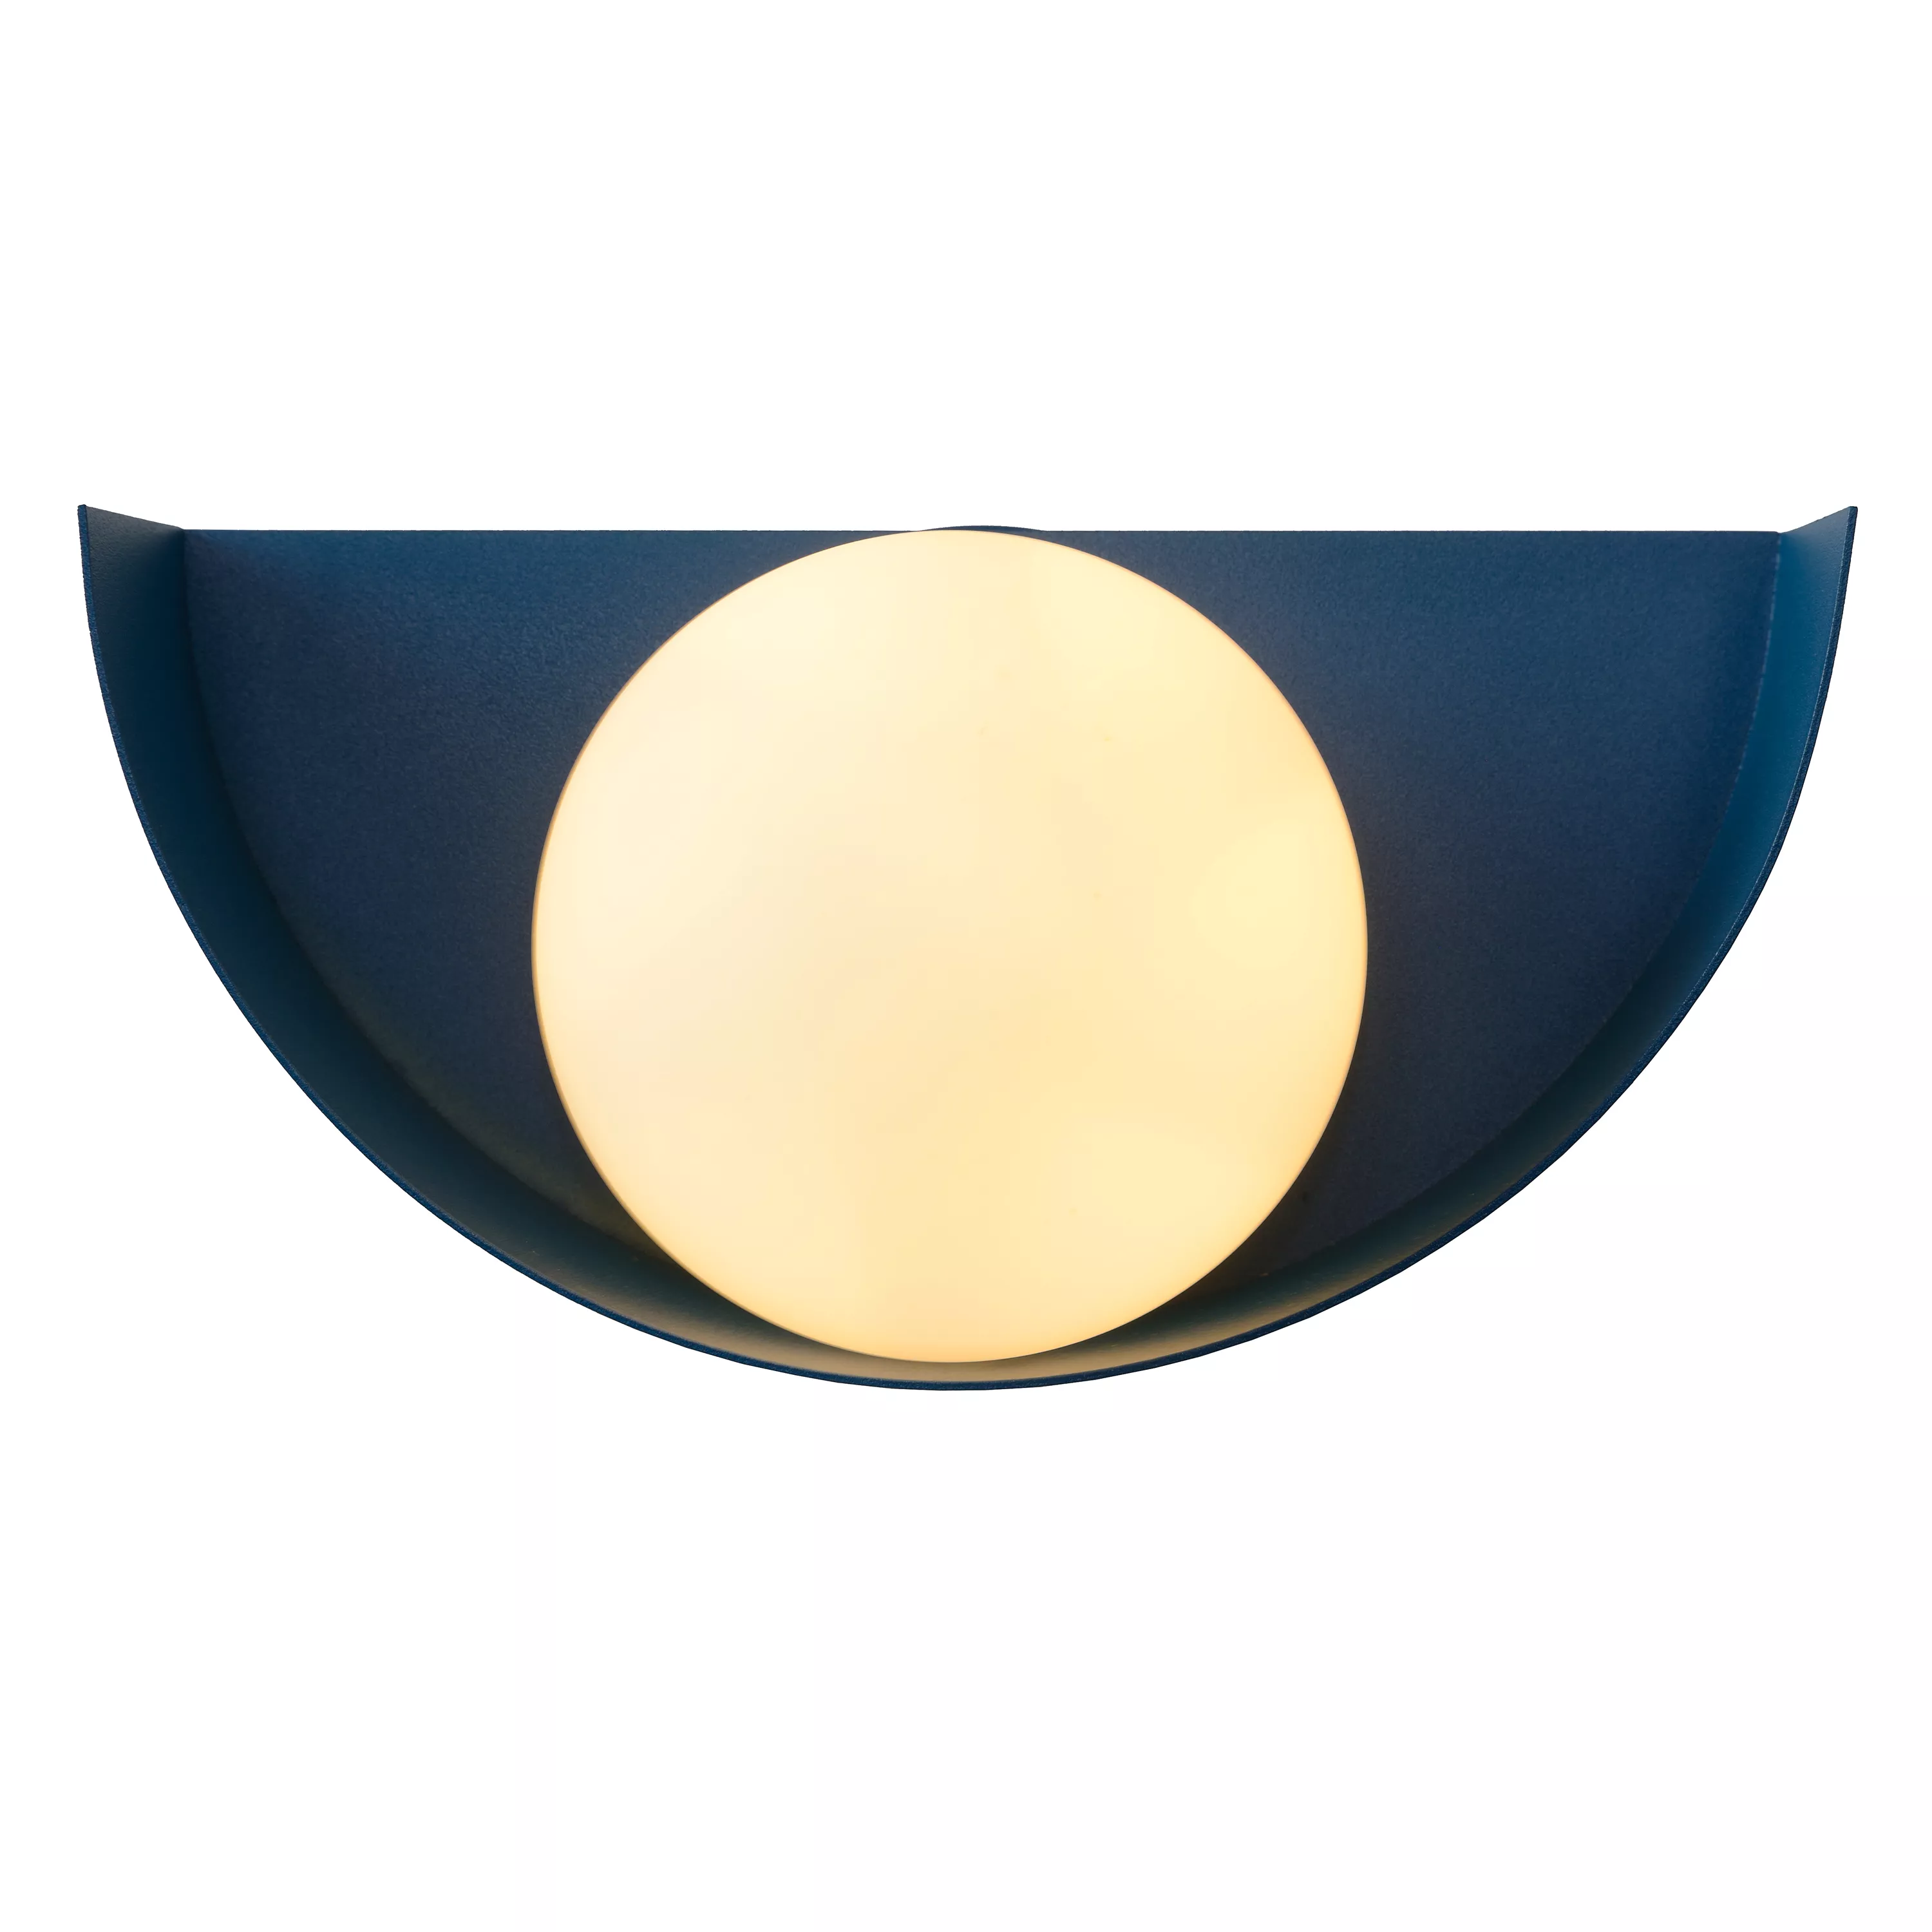 Dekoratívna nástenná lampa Benni v modrej farbe dodá svetlo vašej spálni, obývačke alebo chodbe.